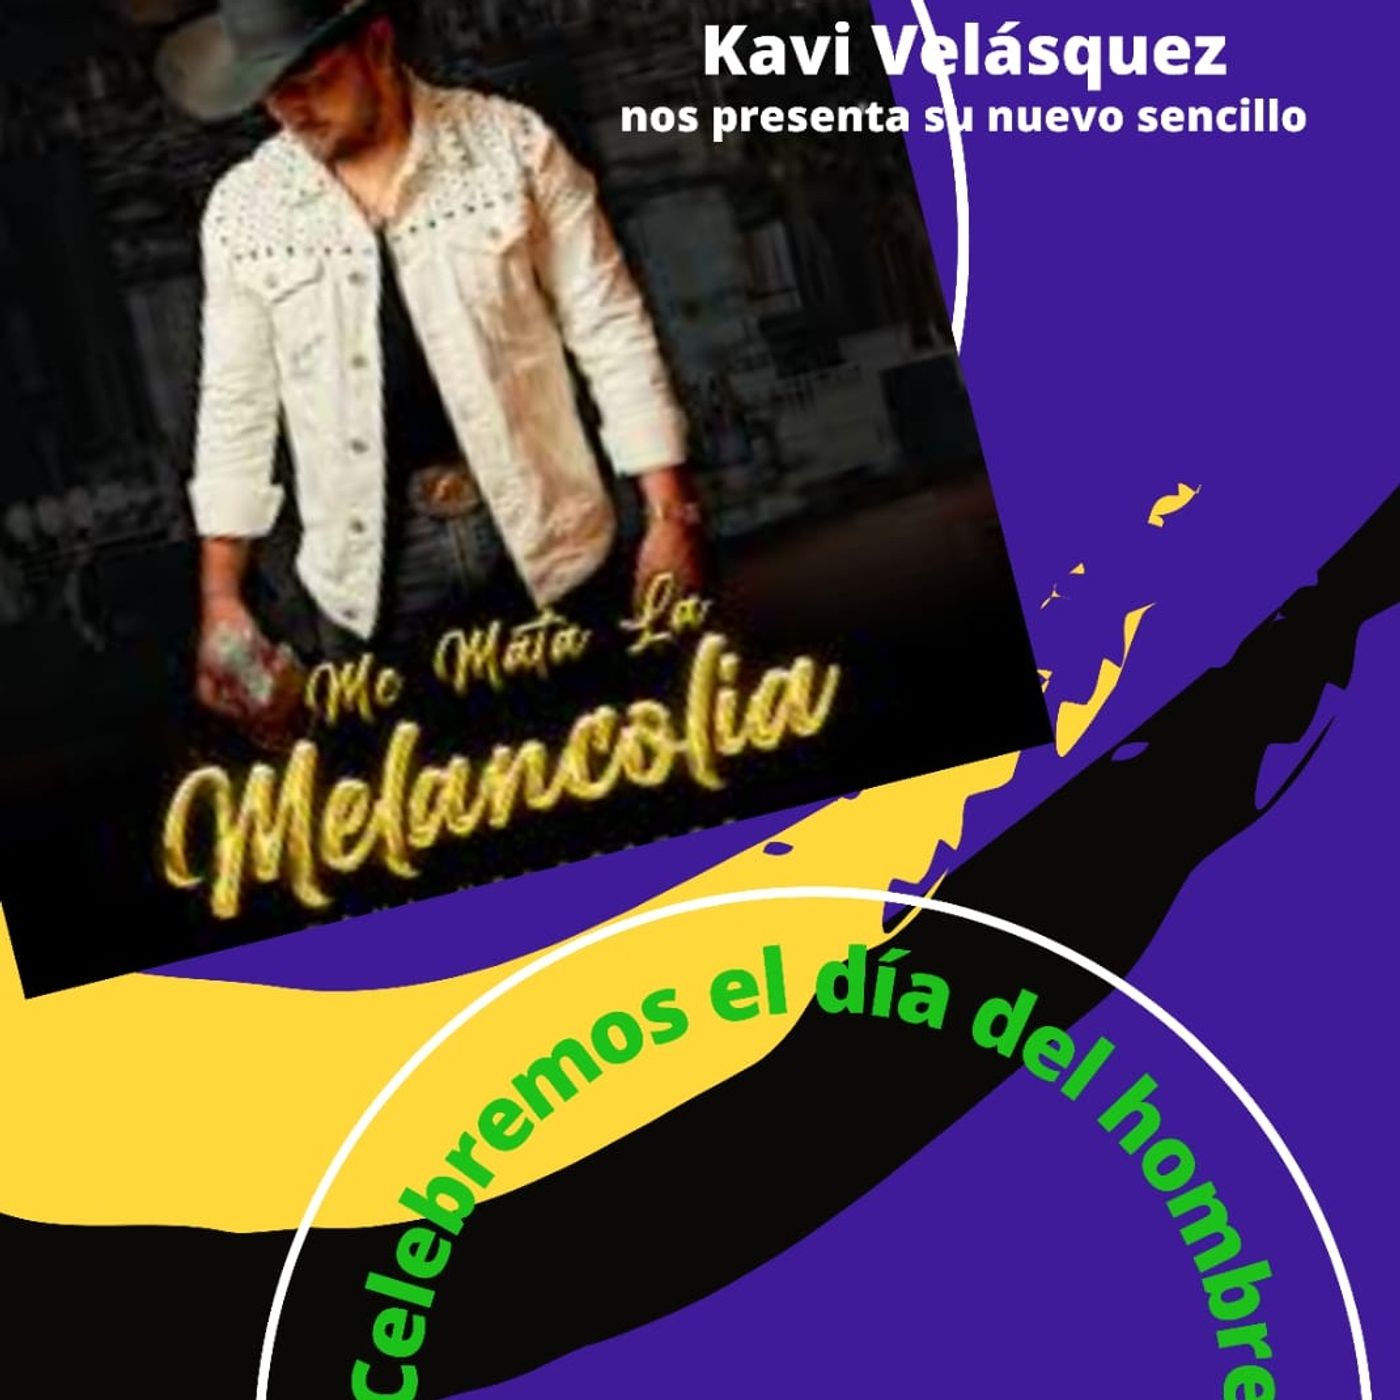 Me mata la melancolía con Kavi Velasquez